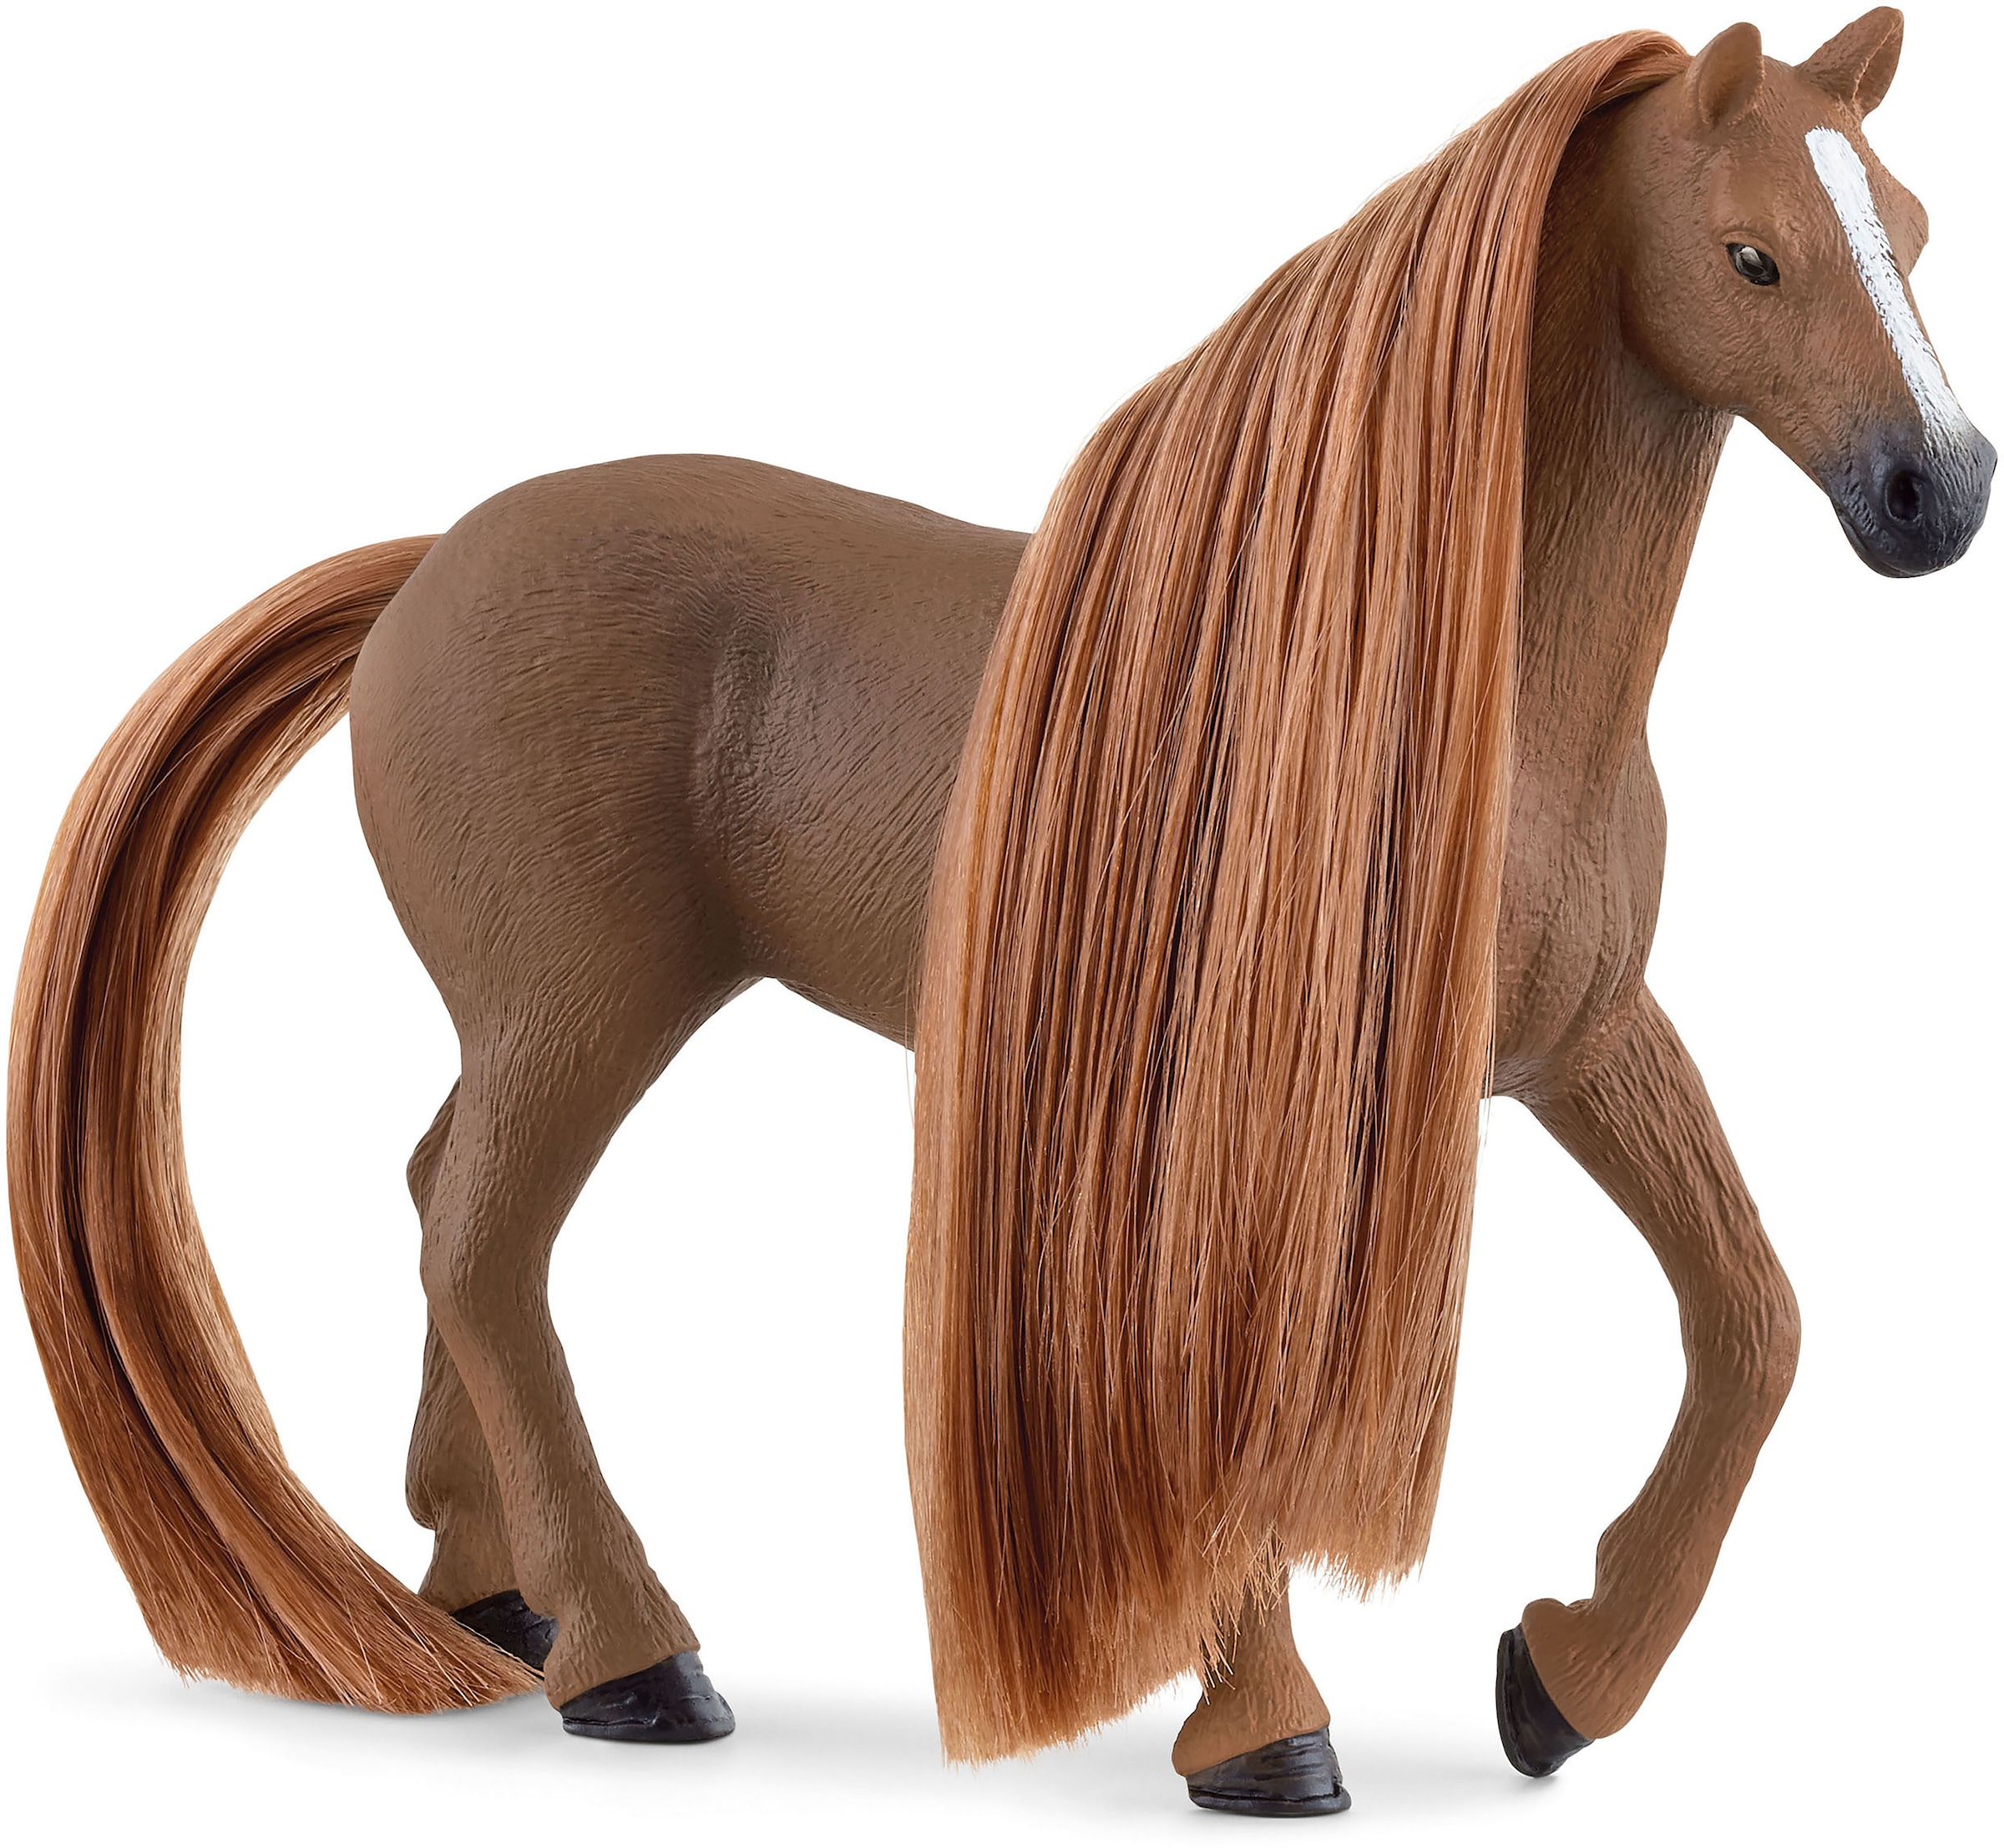 Schleich® Spielfigur »HORSE CLUB, Beauty Horse Englisch Vollblut Stute (42582)«, Sofia's Beauties